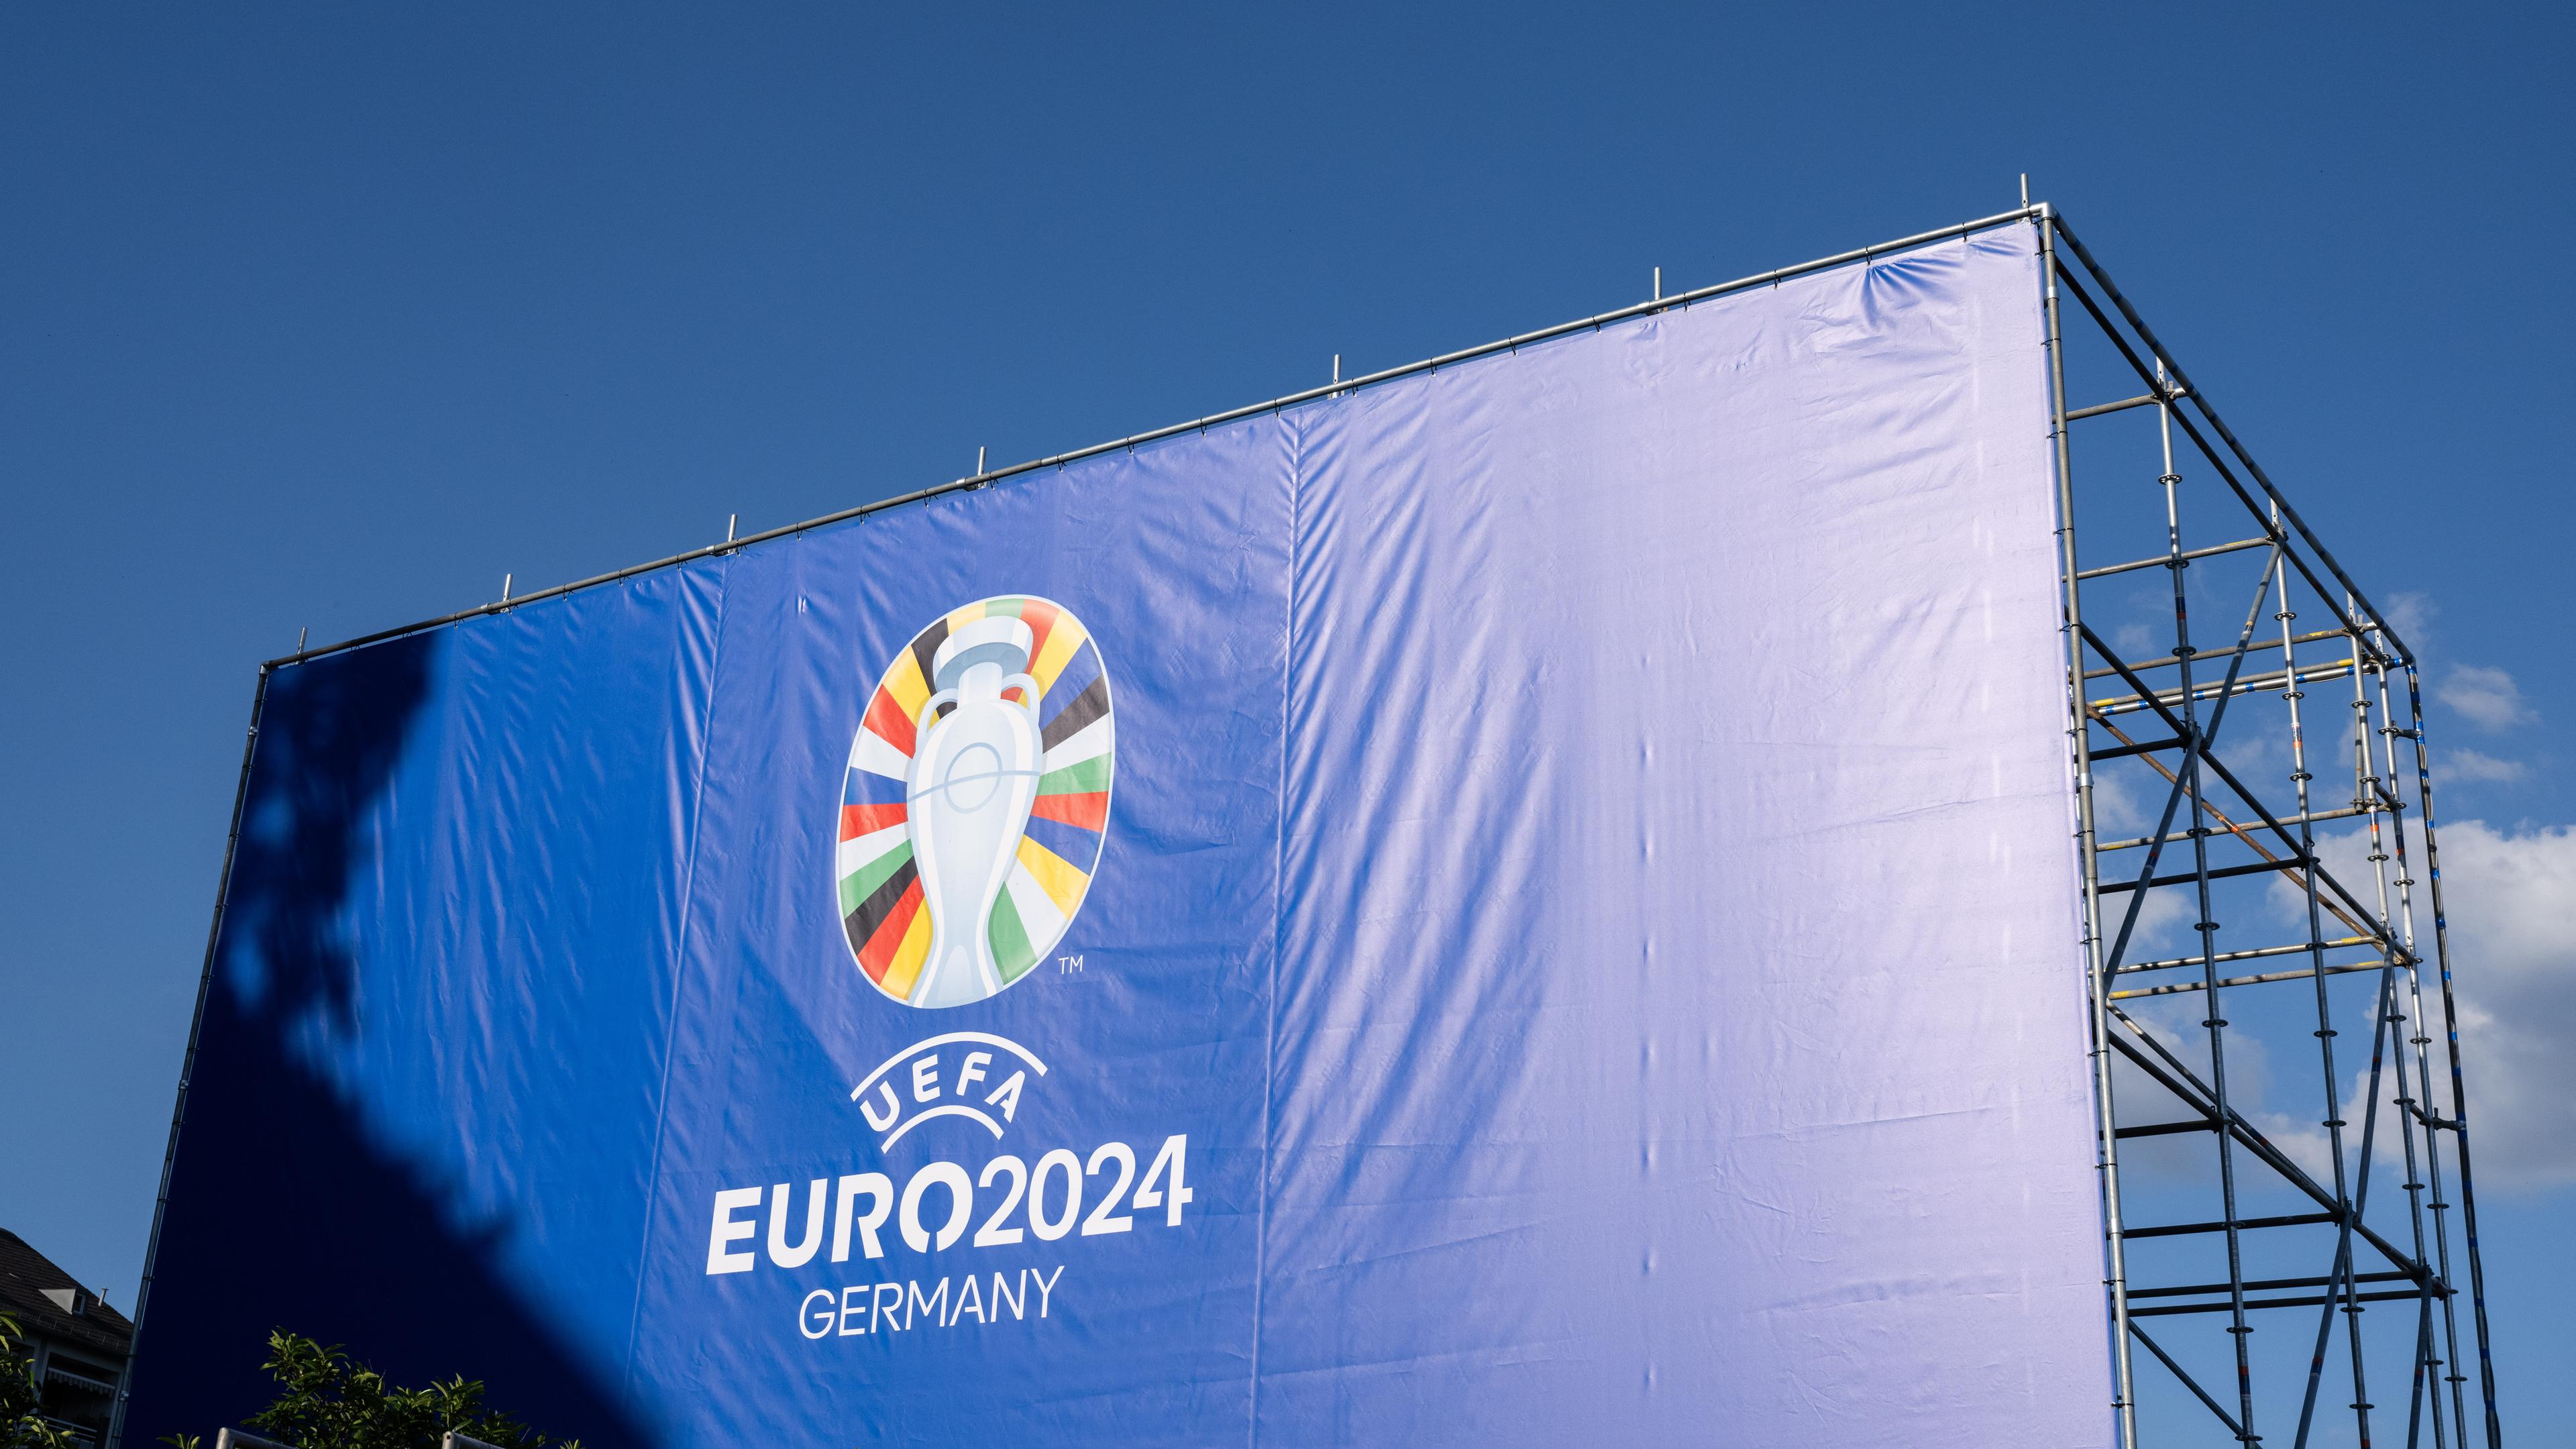 Hessen, Frankfurt/Main: Ein riesiges Banner weist auf dem Mainufer in Frankfurt auf die bevorstehende Fußball-EM 2024 hin.